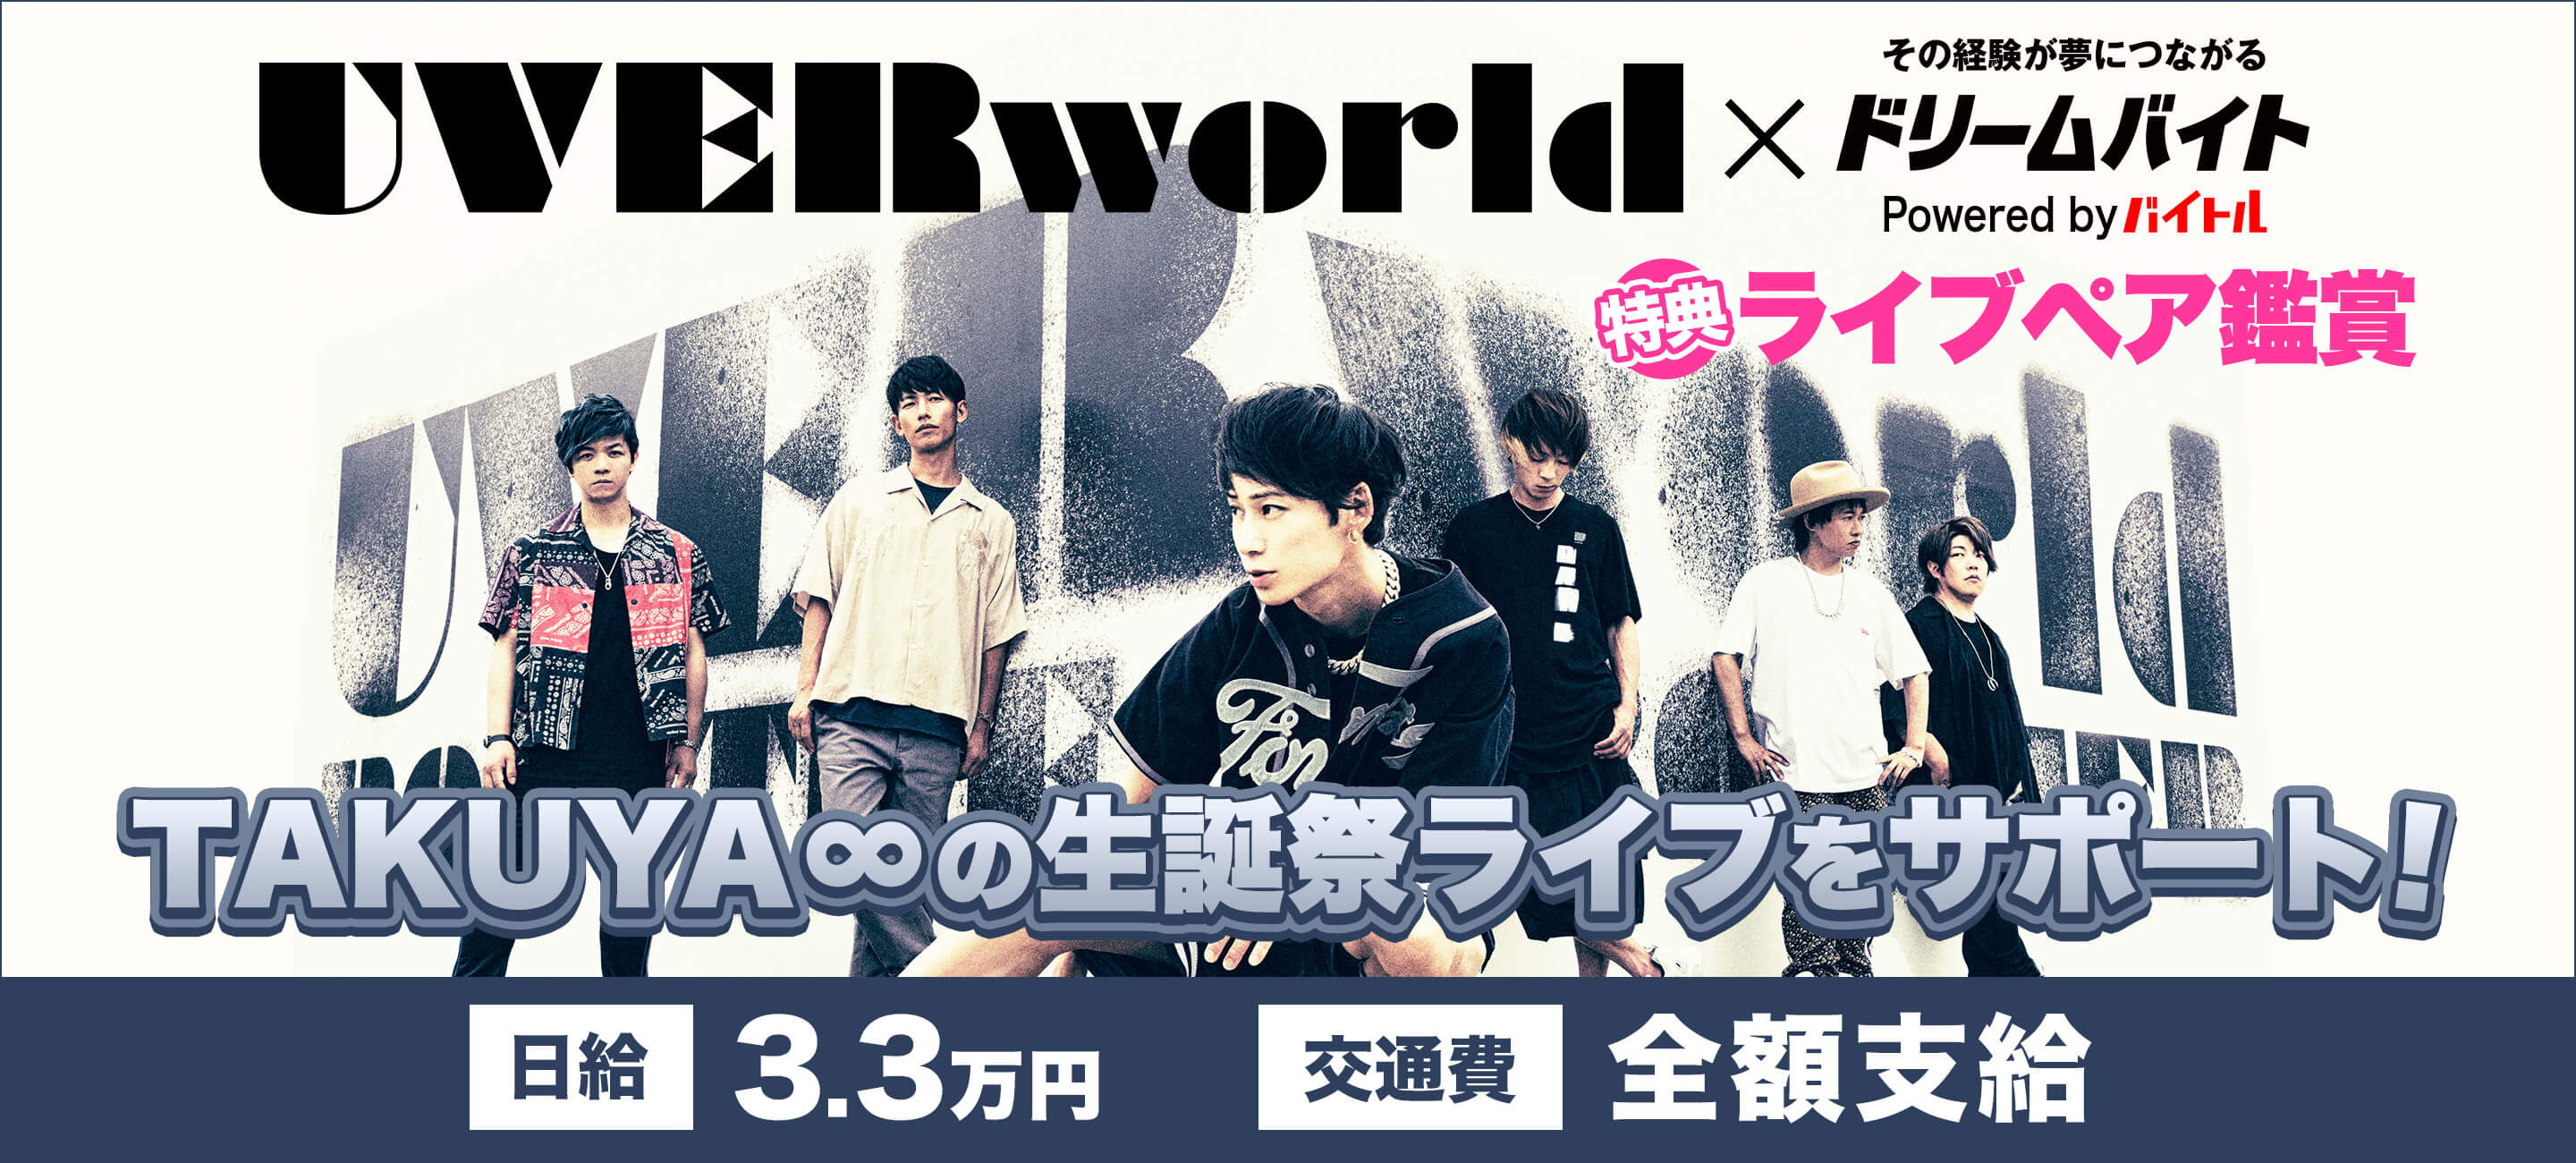 日本を代表する大人気ロックバンドuverworldのライブをサポートできるアルバイトを大募集 ディップのプレスリリース